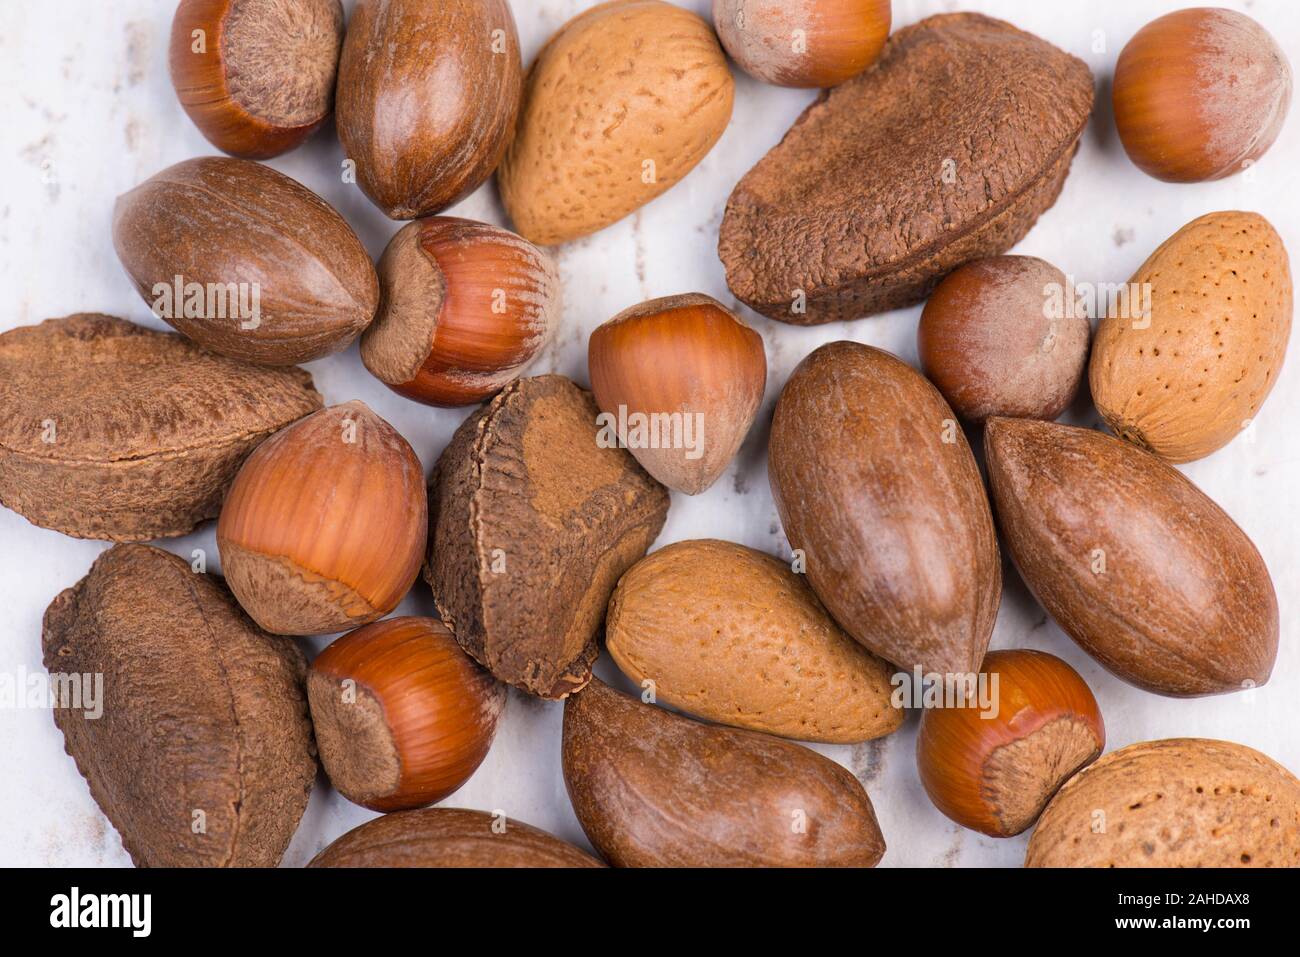 Mixed nuts, hazelnuts, walnuts, brazil nuts, pecan nuts, almonds Stock Photo